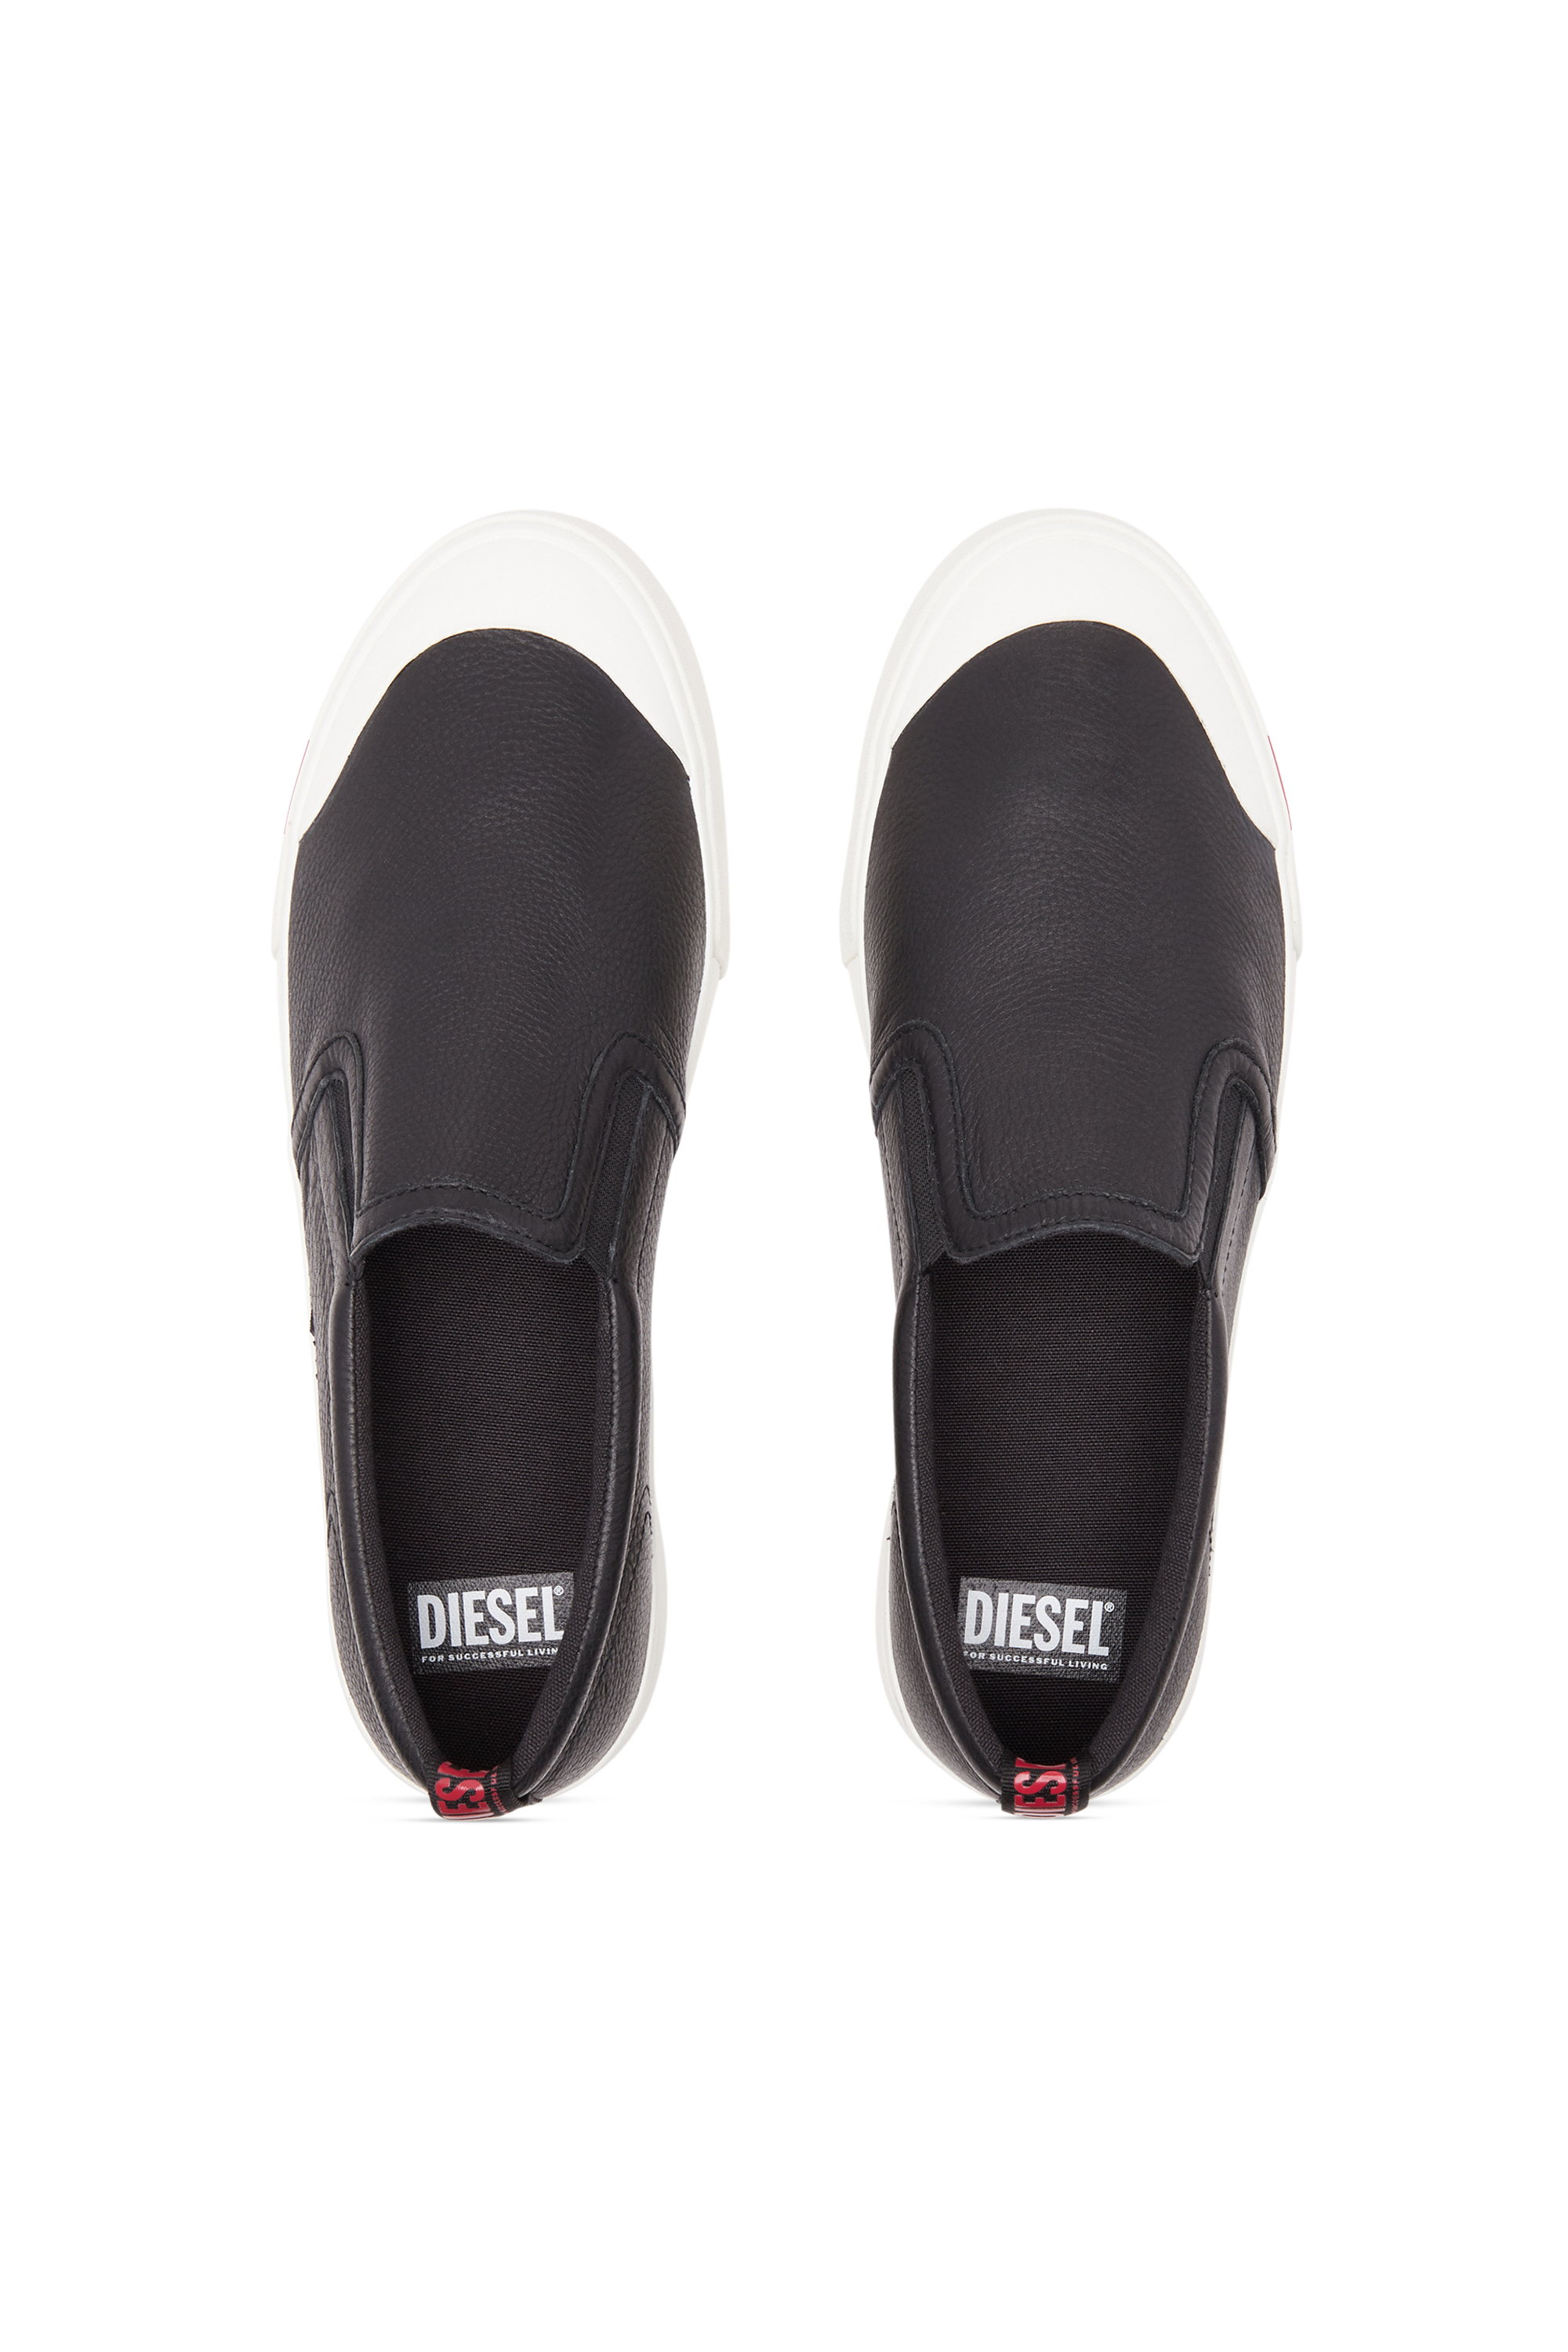 Diesel - S-ATHOS SLIP ON, Man S-Athos Slip On-Slip-on sneakers in plain leather in Black - Image 5